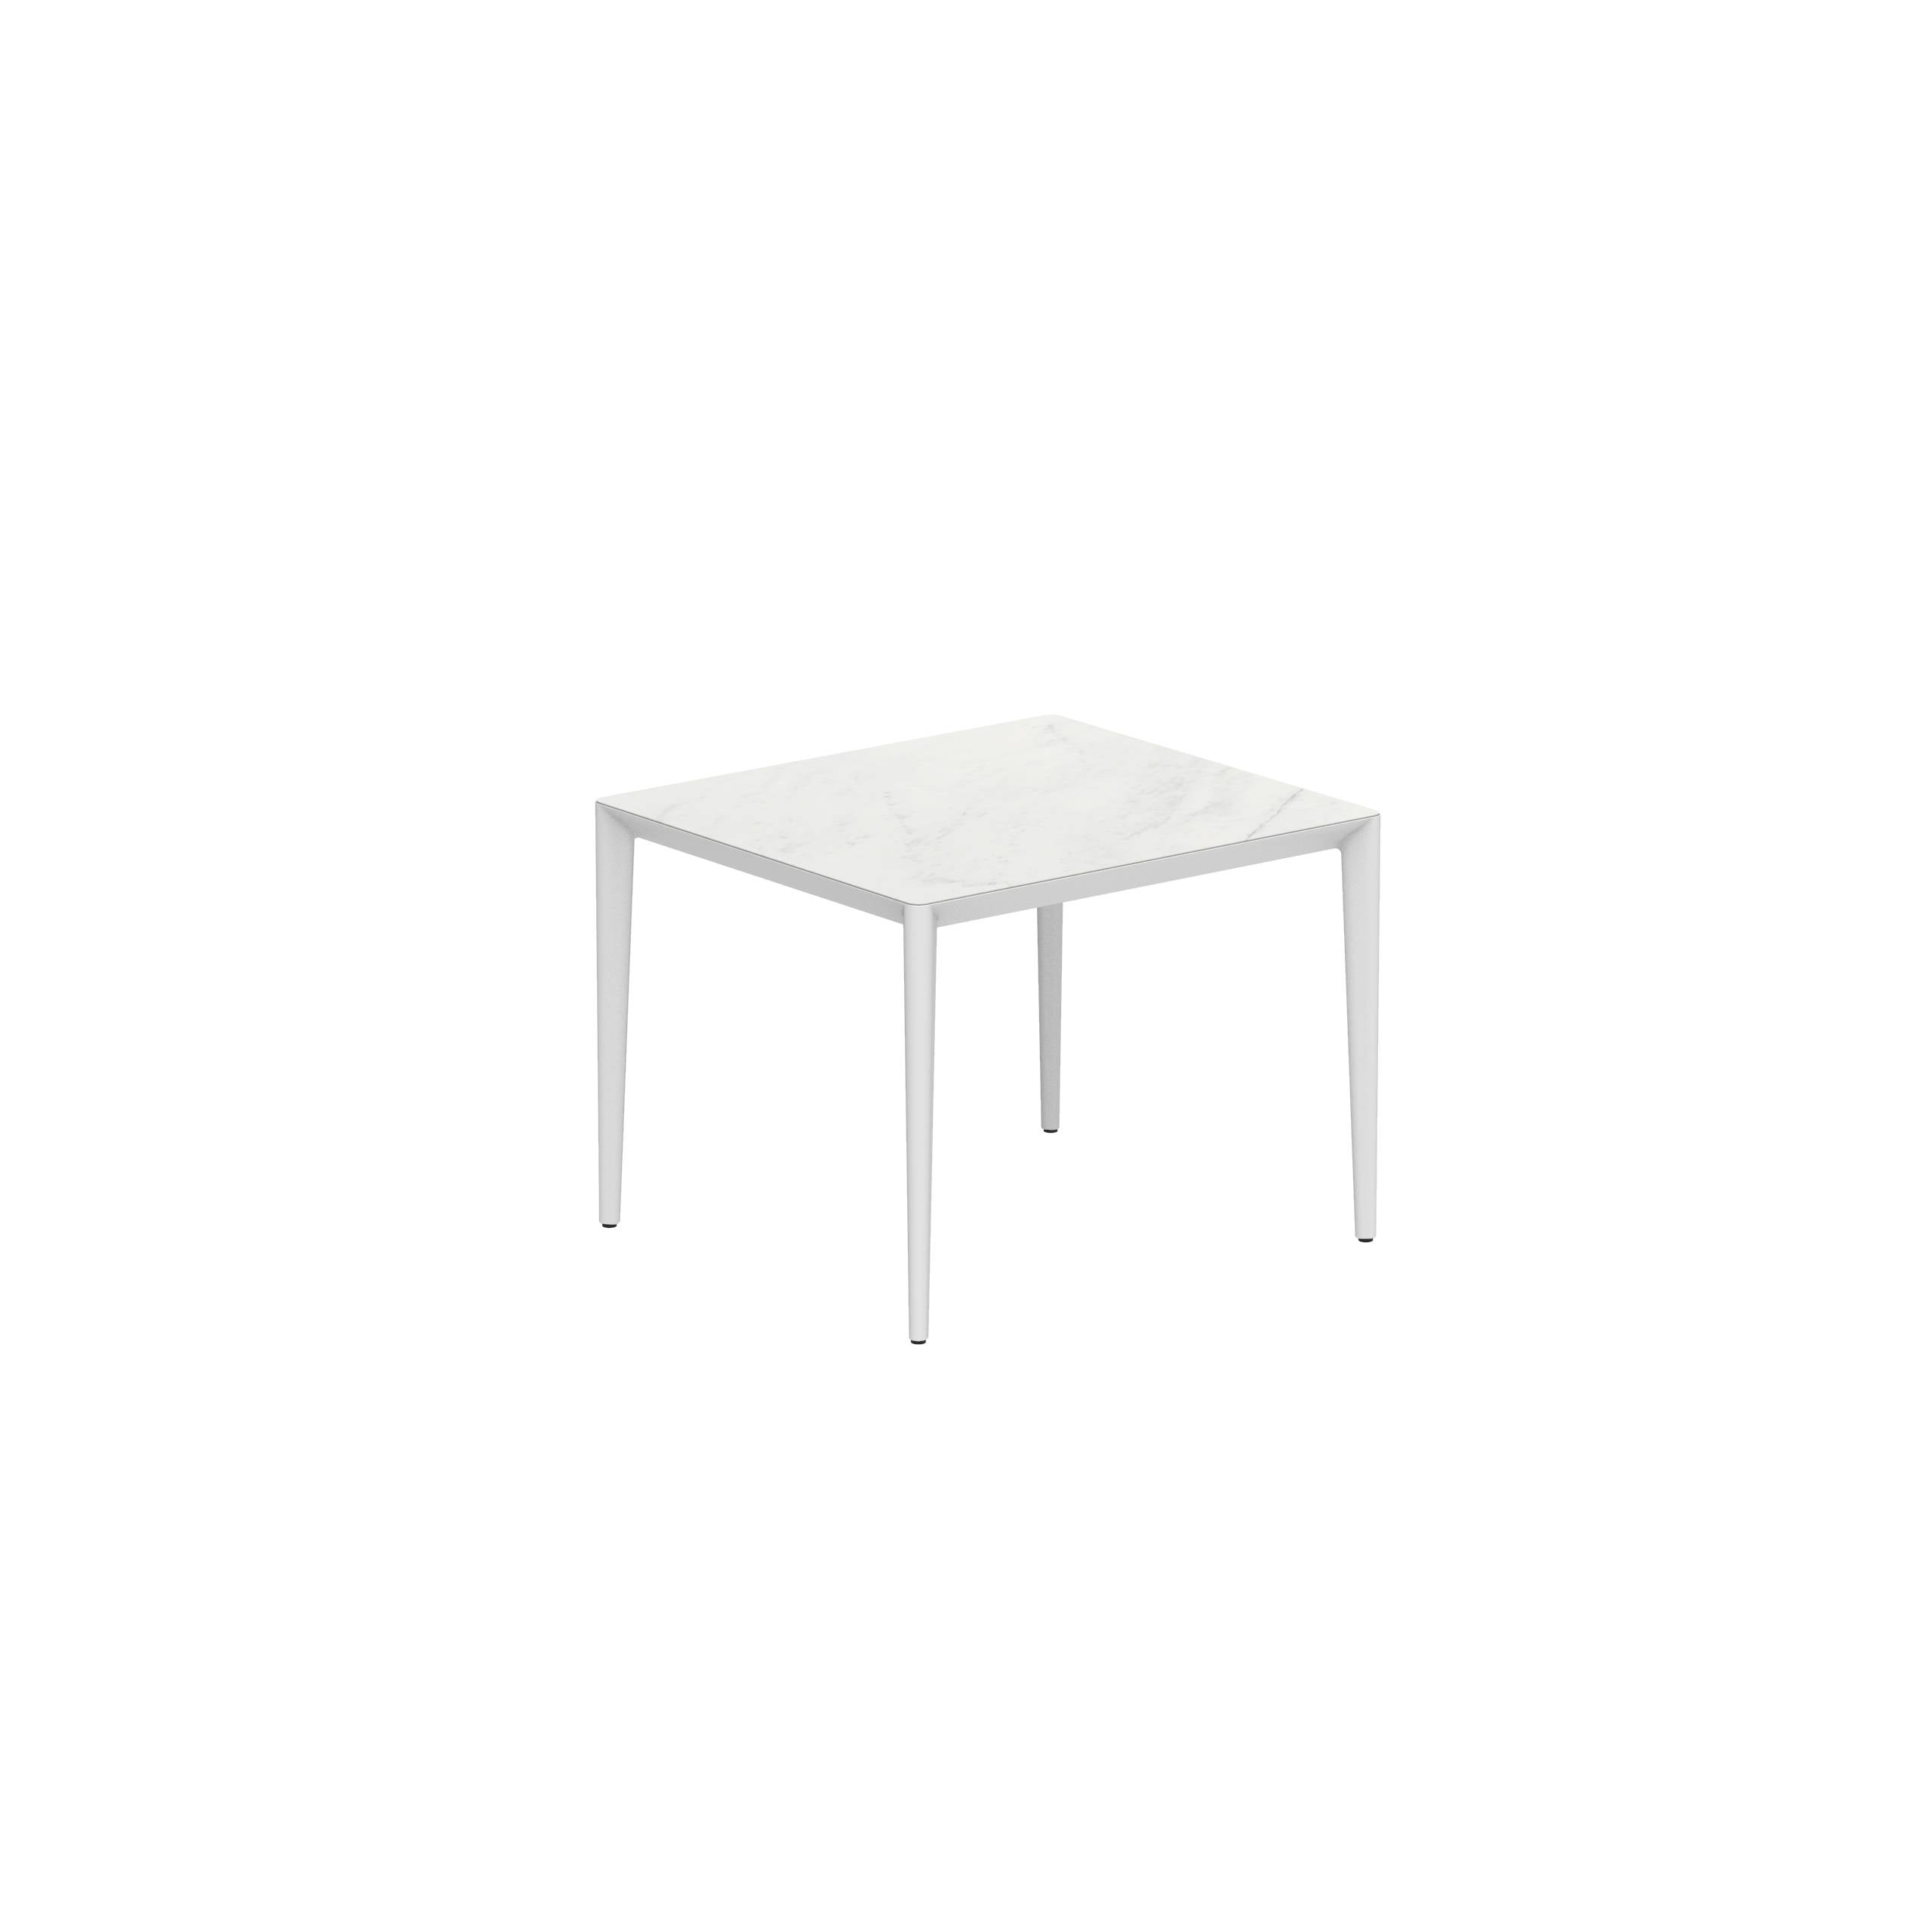 U-Nite Table 100x90cm White With Ceramic Tabletop In Bianco Statuario